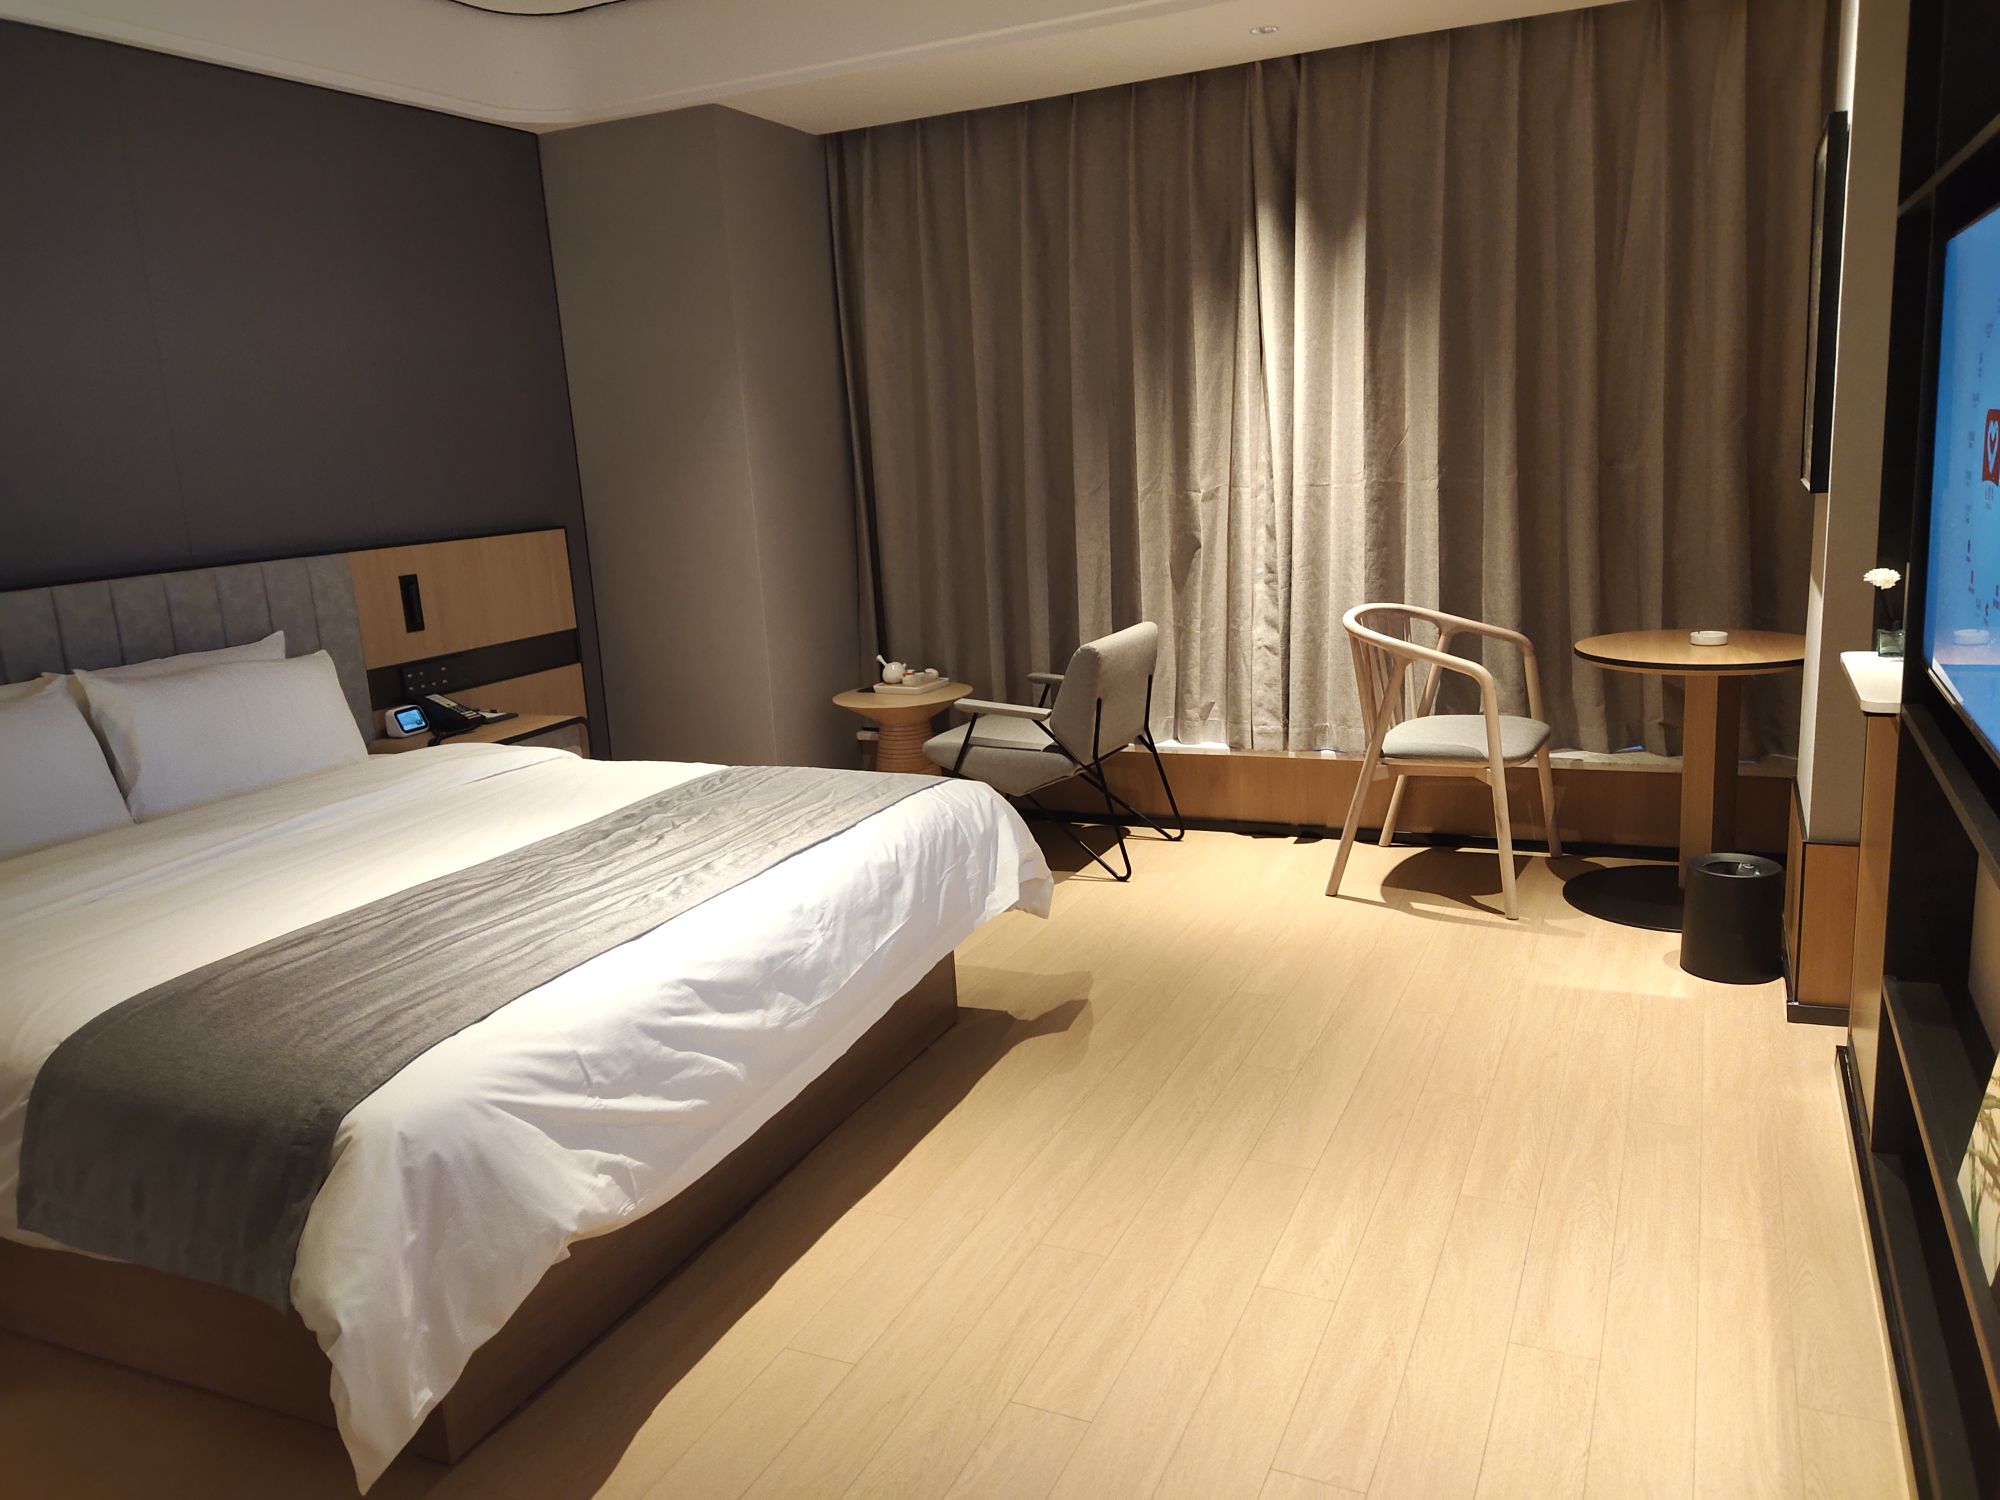 酒店位于隆昌新区繁华地段，设施设备非常新，接待大厅干净大气。前台小妹服务态度非常好，有回家的感觉。房